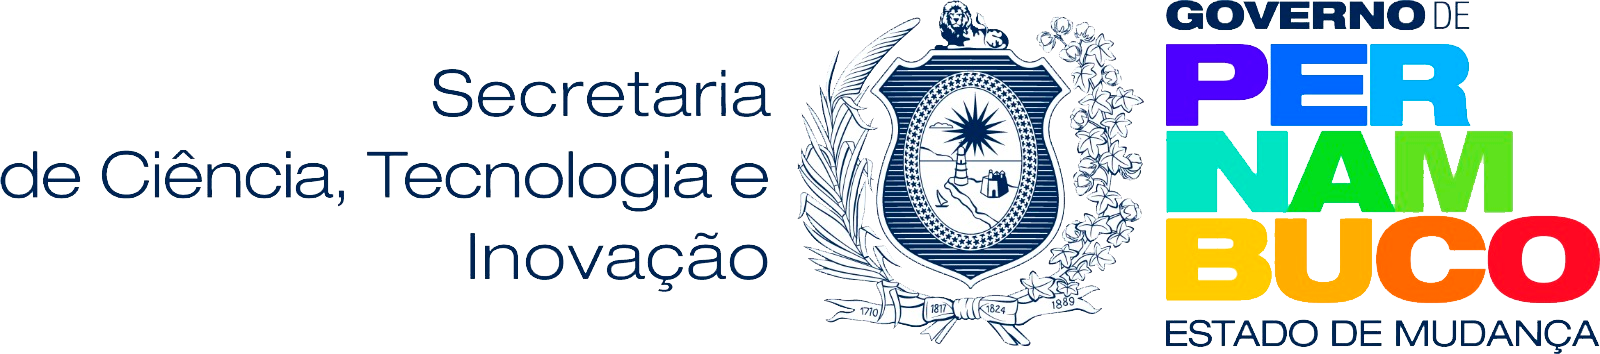 Logo do Estado